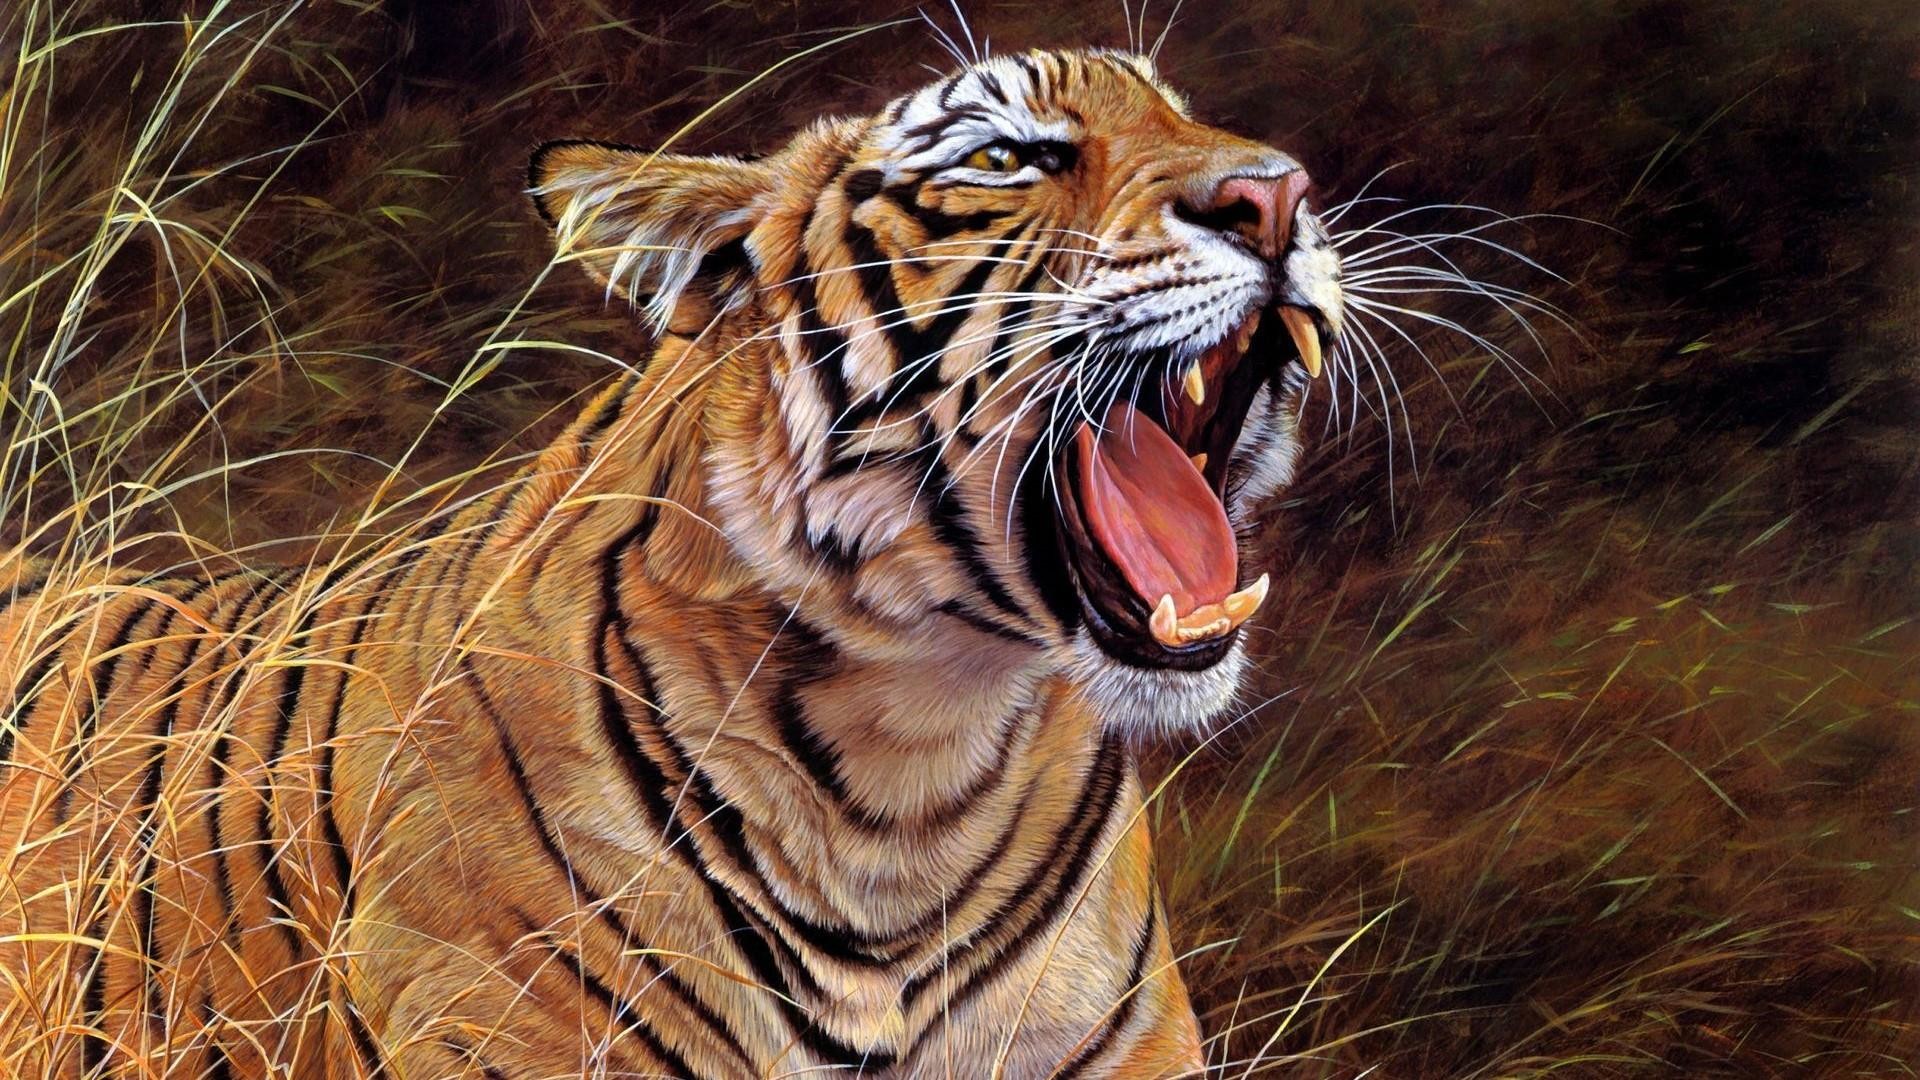 1920x1080, Bengal Tiger Roar Wallpaper - Roaring Tiger Images Hd - HD Wallpaper 